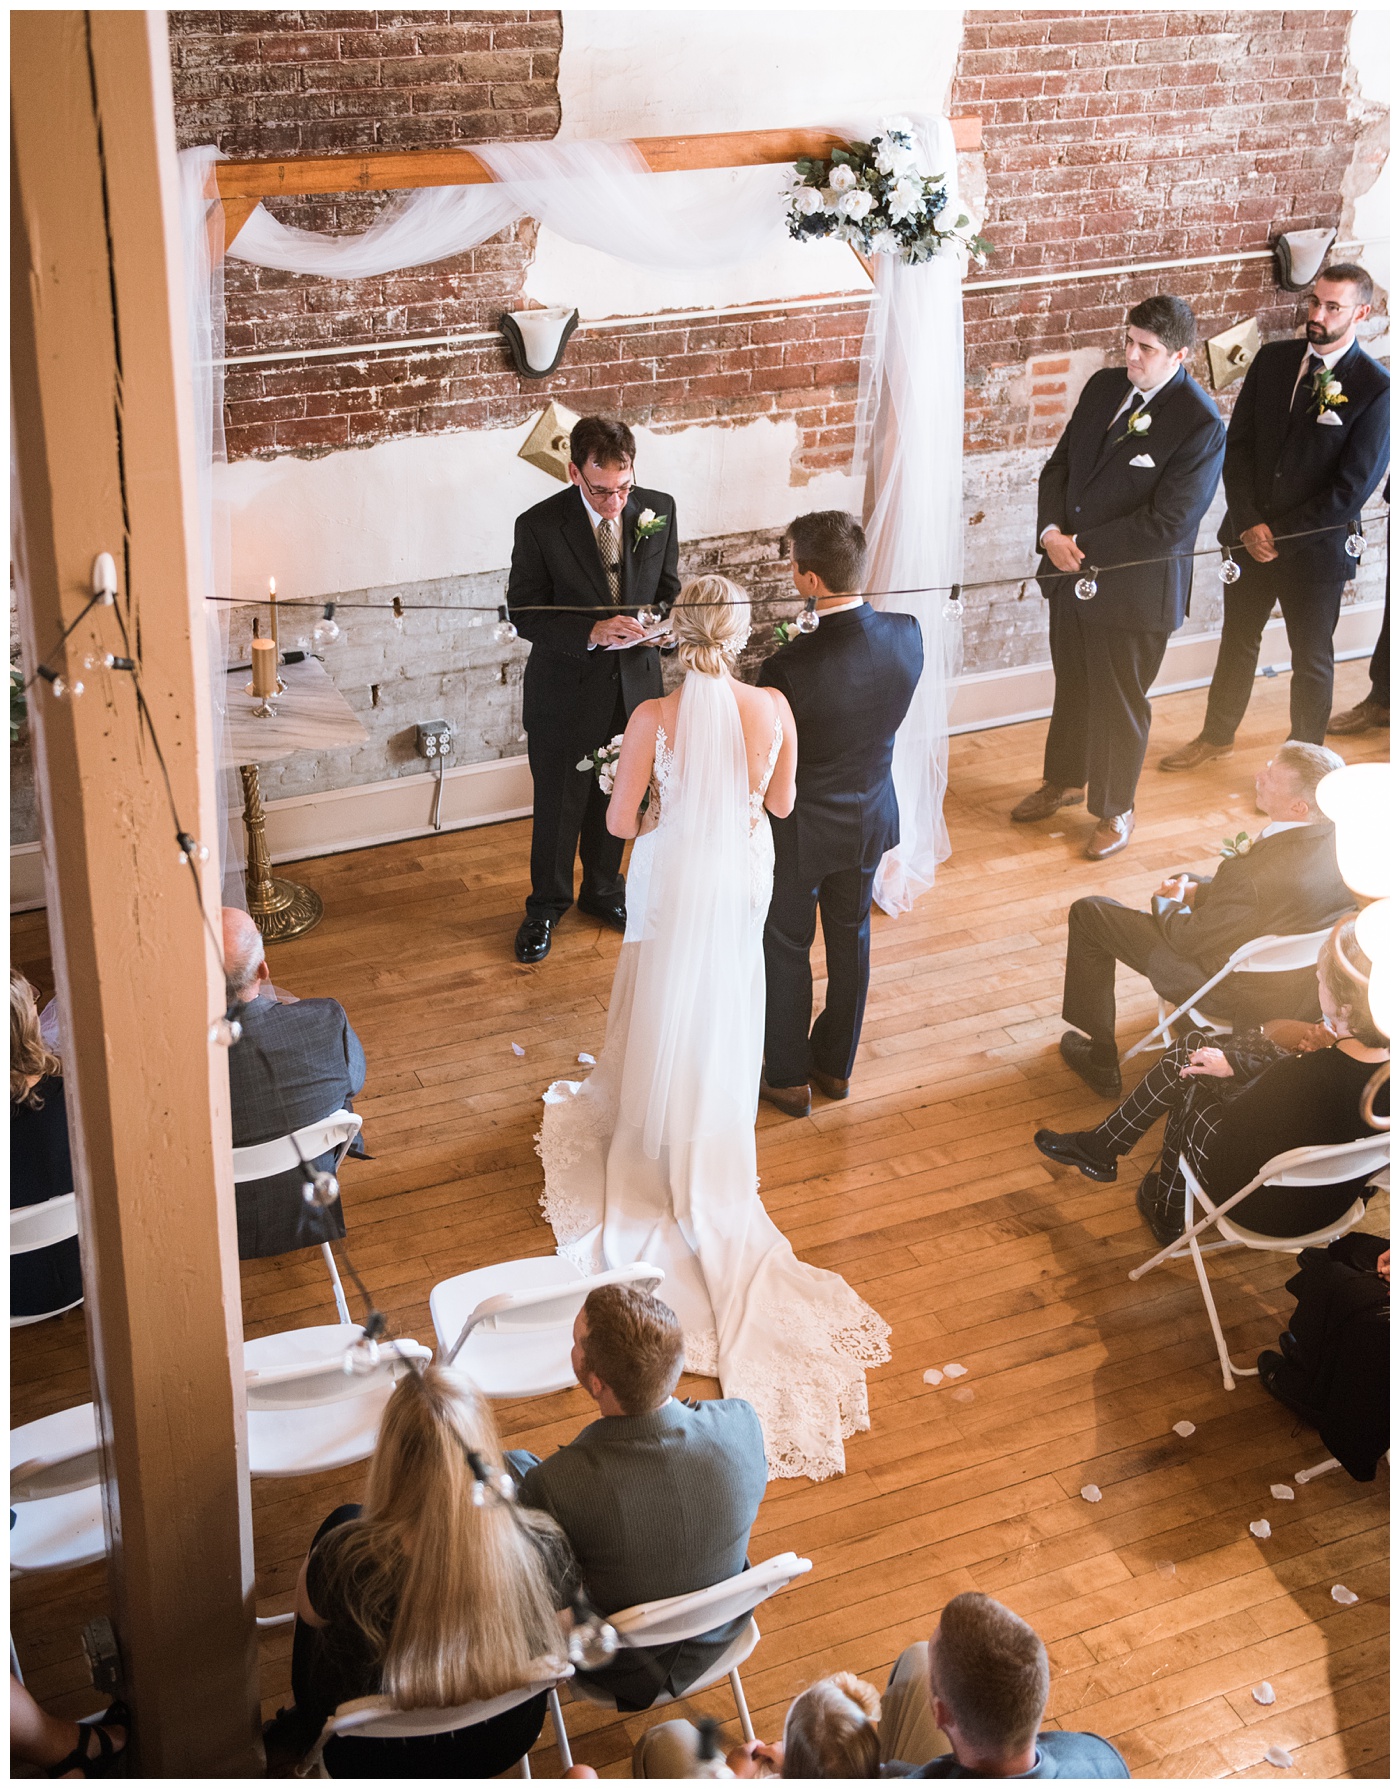 Bride and Groom wedding ceremony in Staunton Virginia at the American Hotel